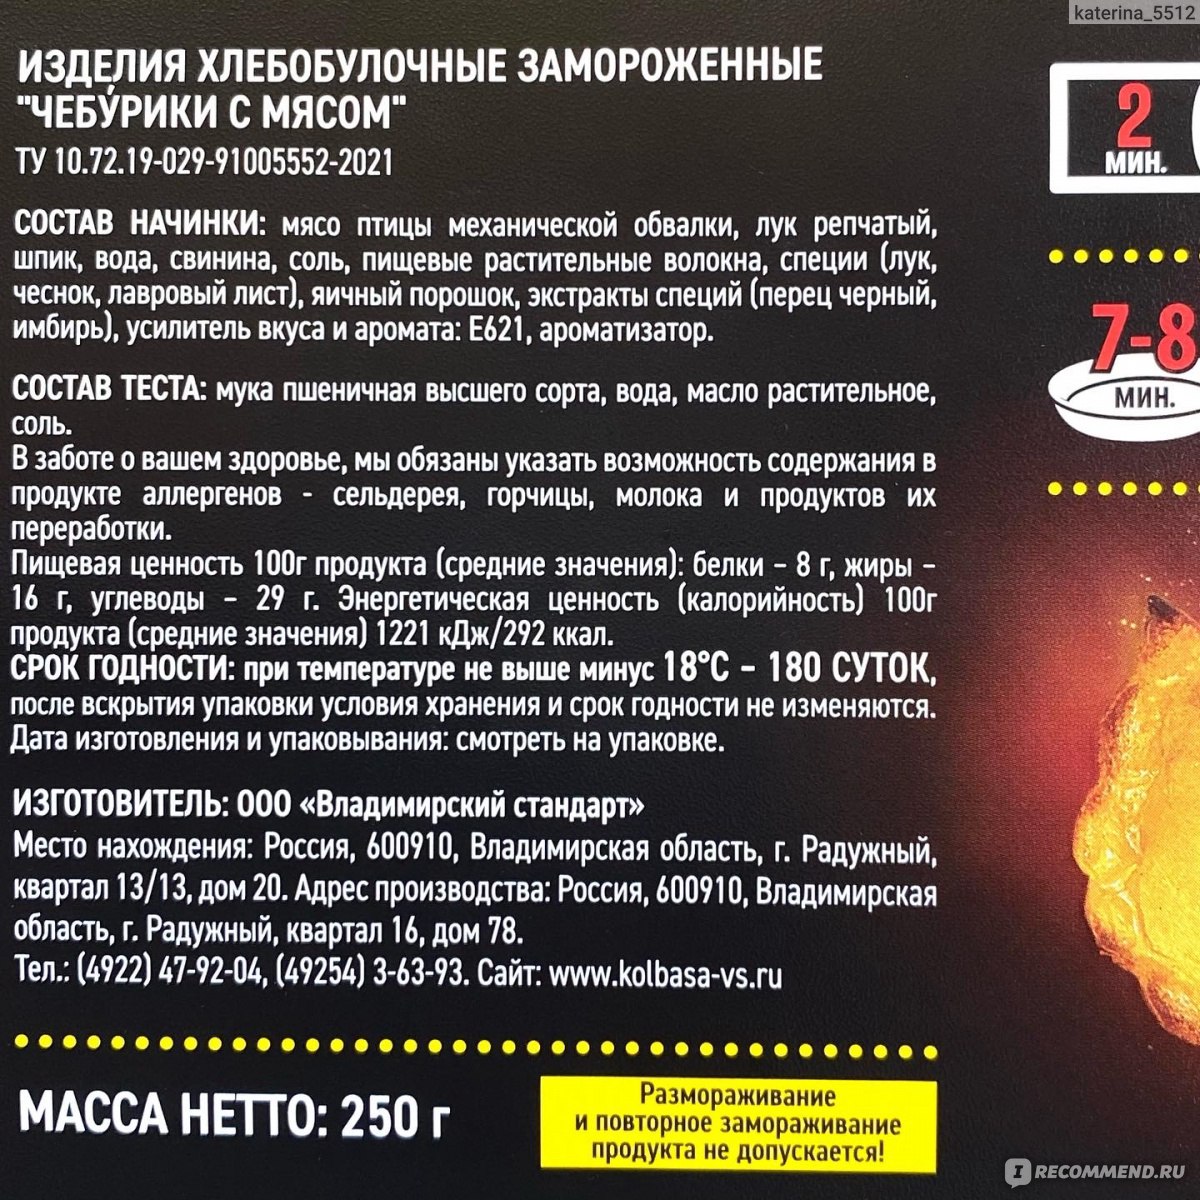 Изделия хлебобулочные жареные замороженные Владимирский стандарт Огогонь чебурики с мясом фото